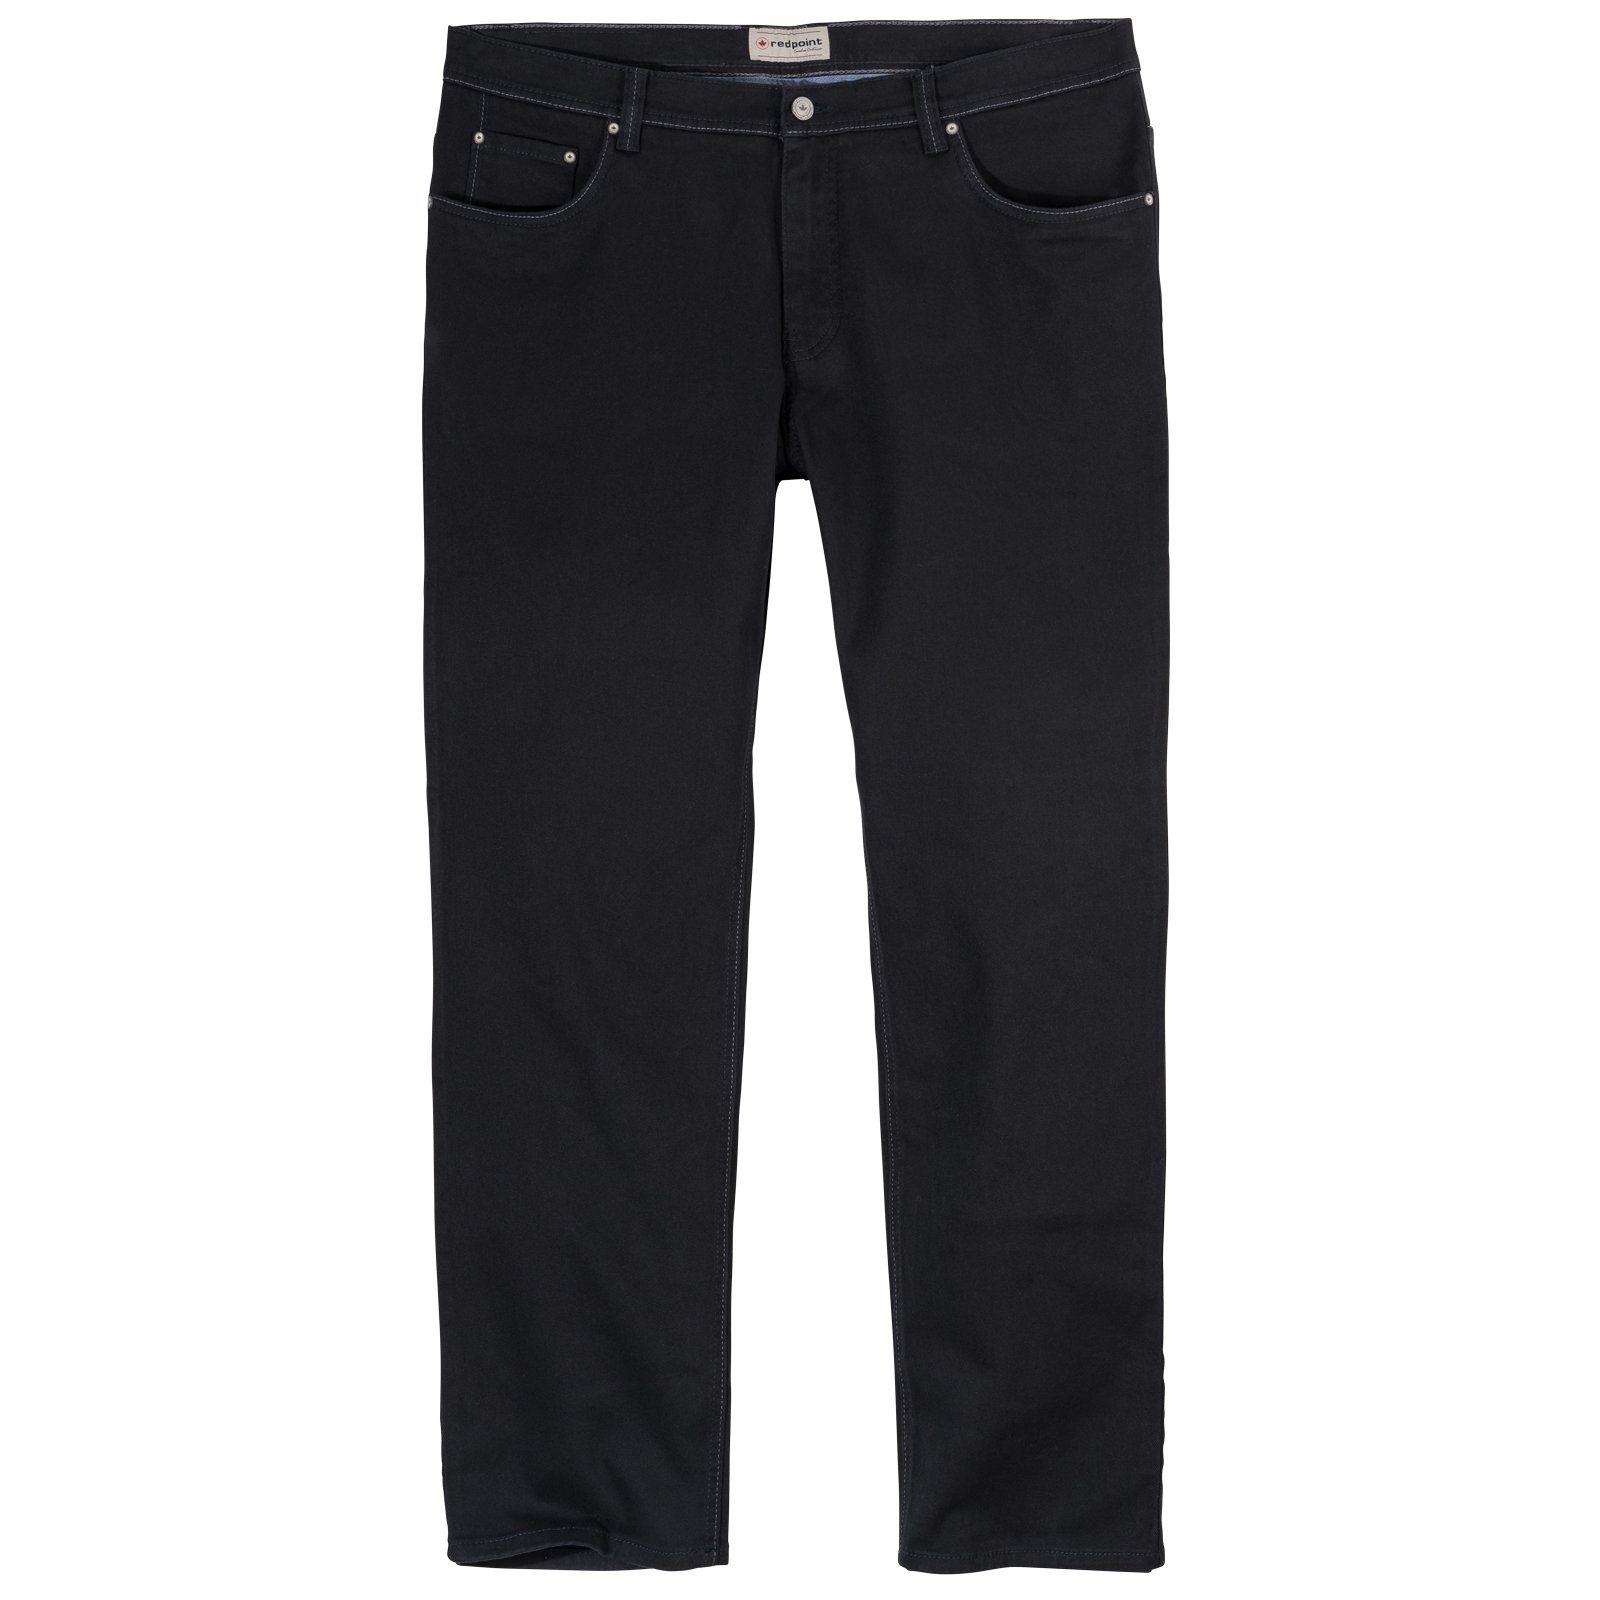 Große Redpoint Redpoint Herren Stretch-Jeans Größen schwarz Langley Stretch-Jeans